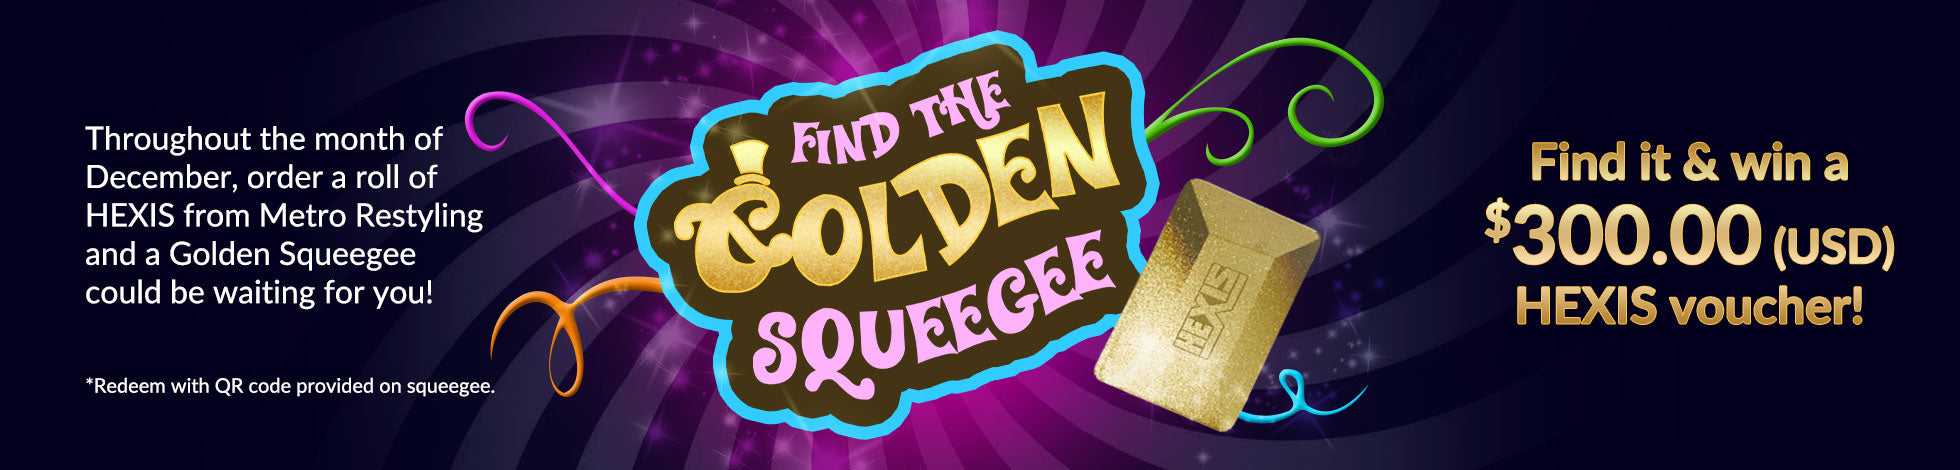 Hexis Golden Squeegee Contest